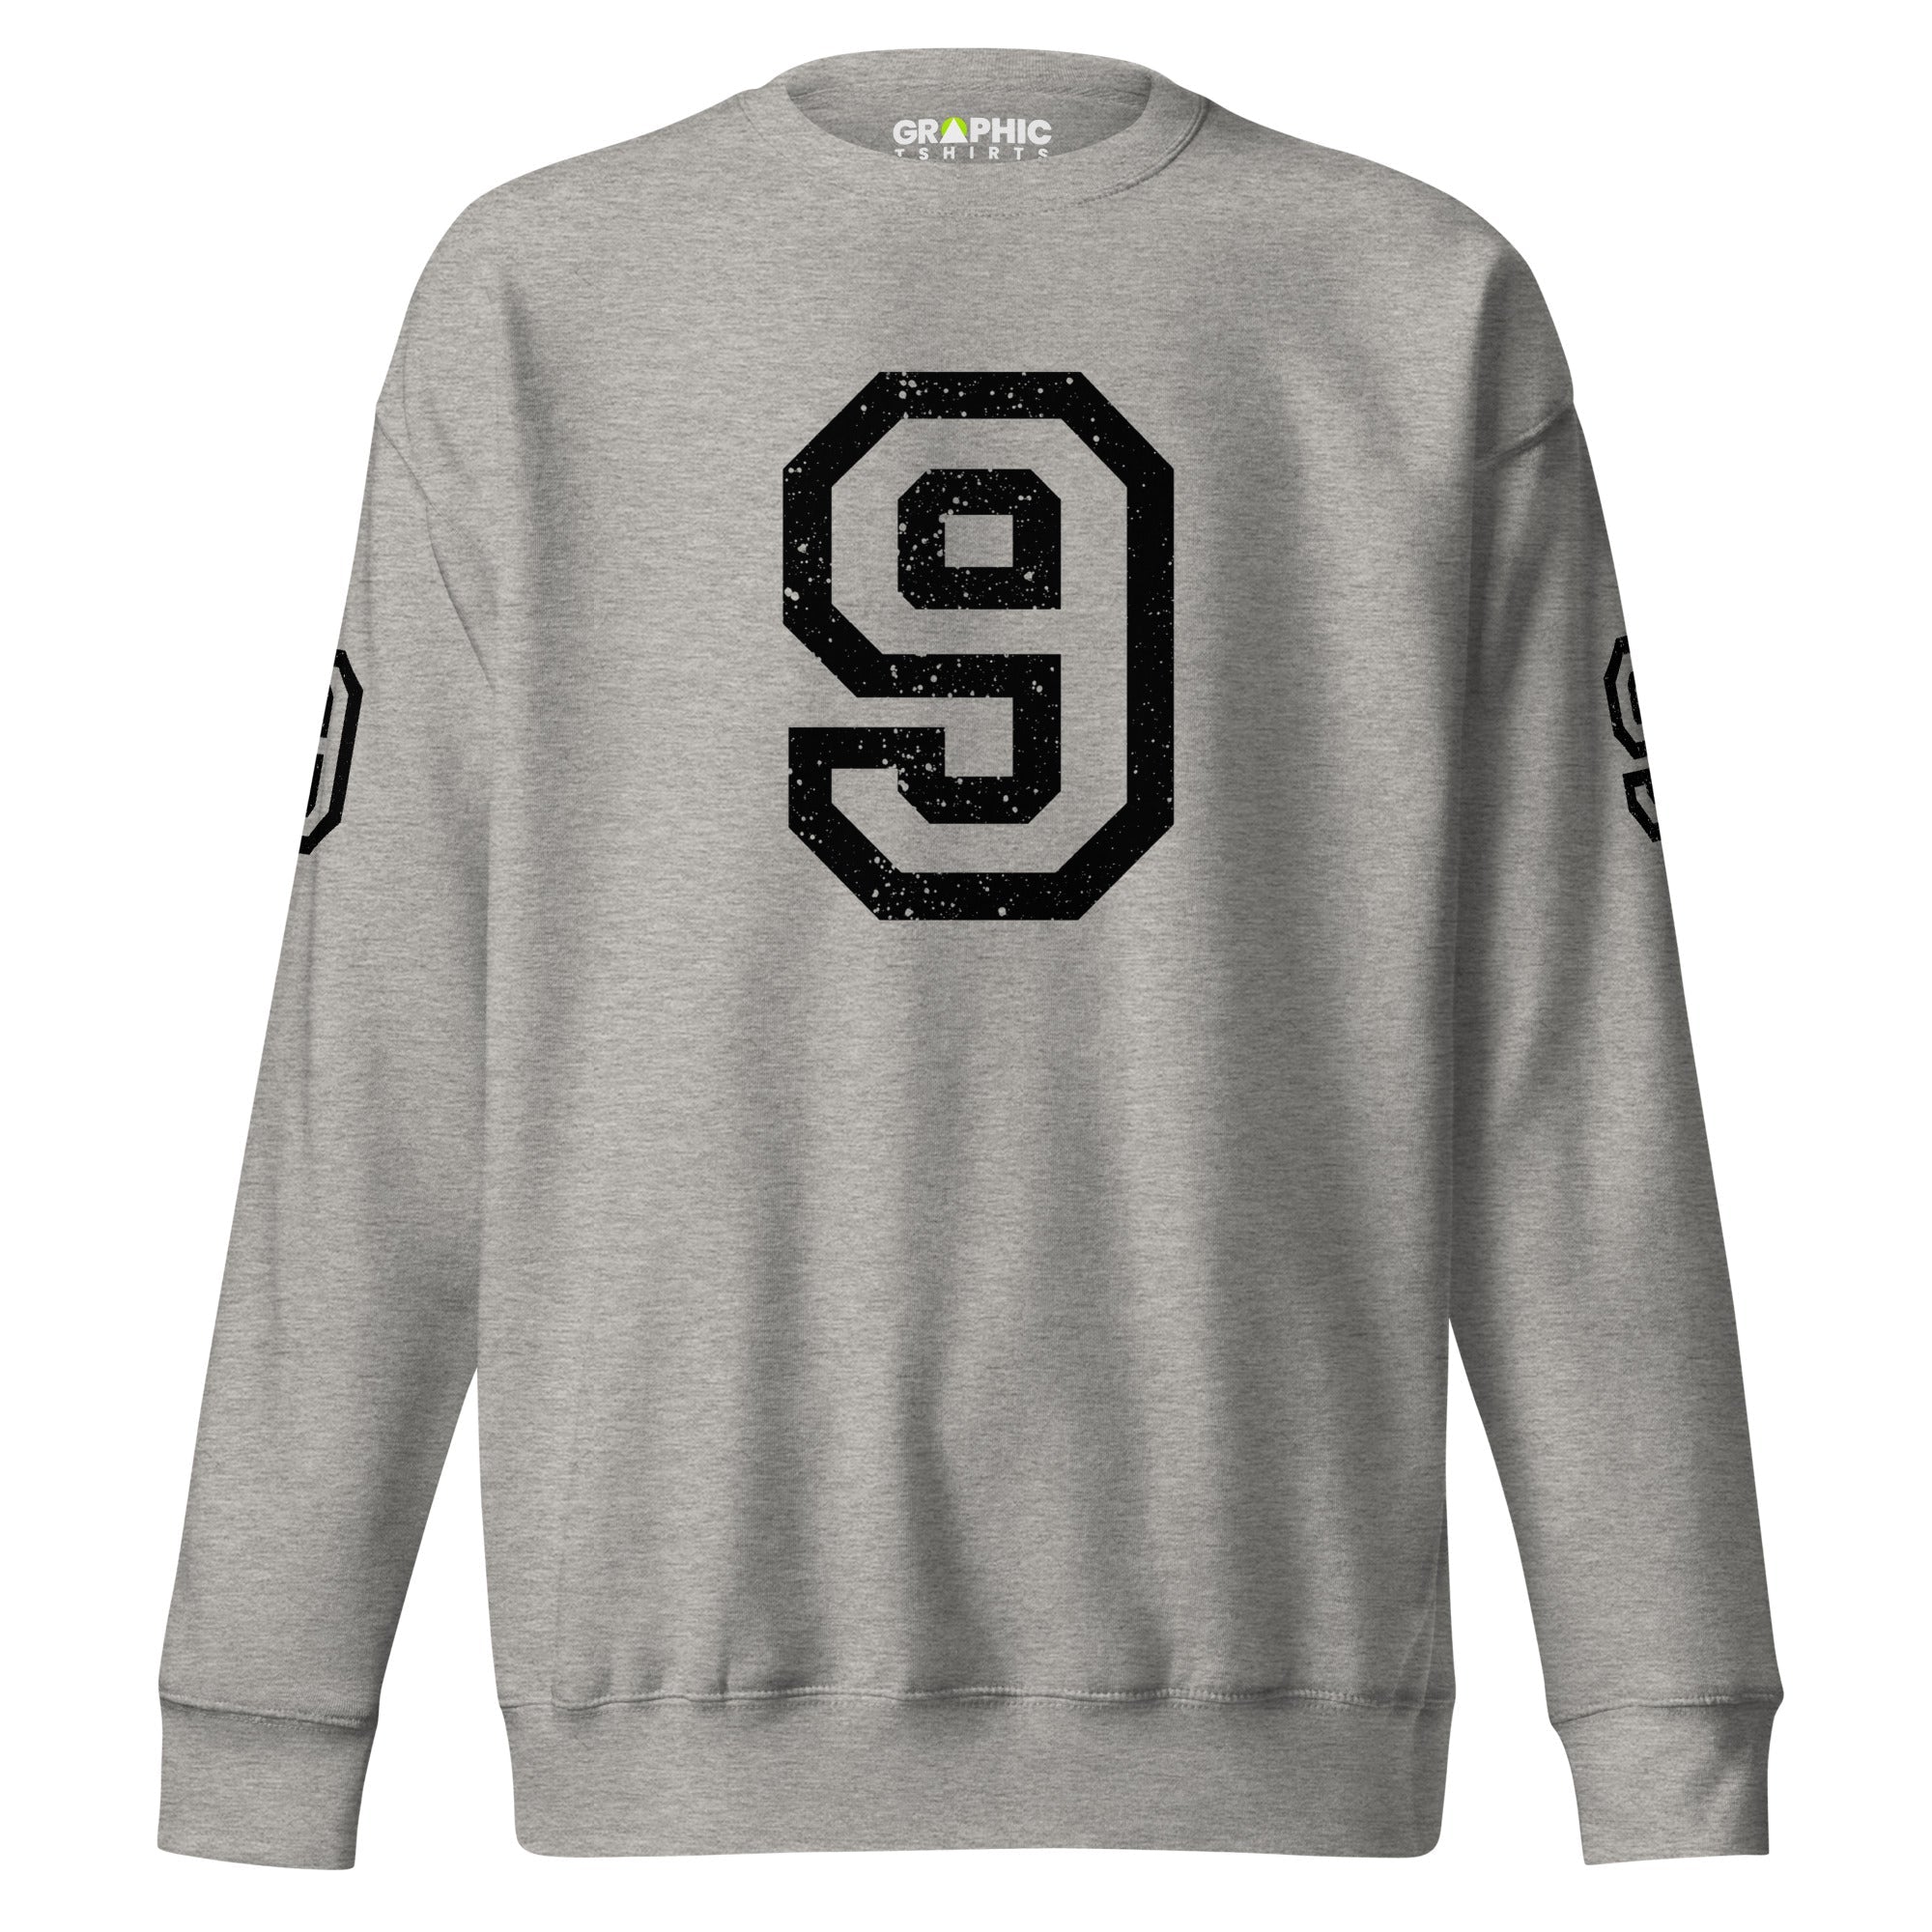 Unisex Premium Sweatshirt - 9 - GRAPHIC T-SHIRTS